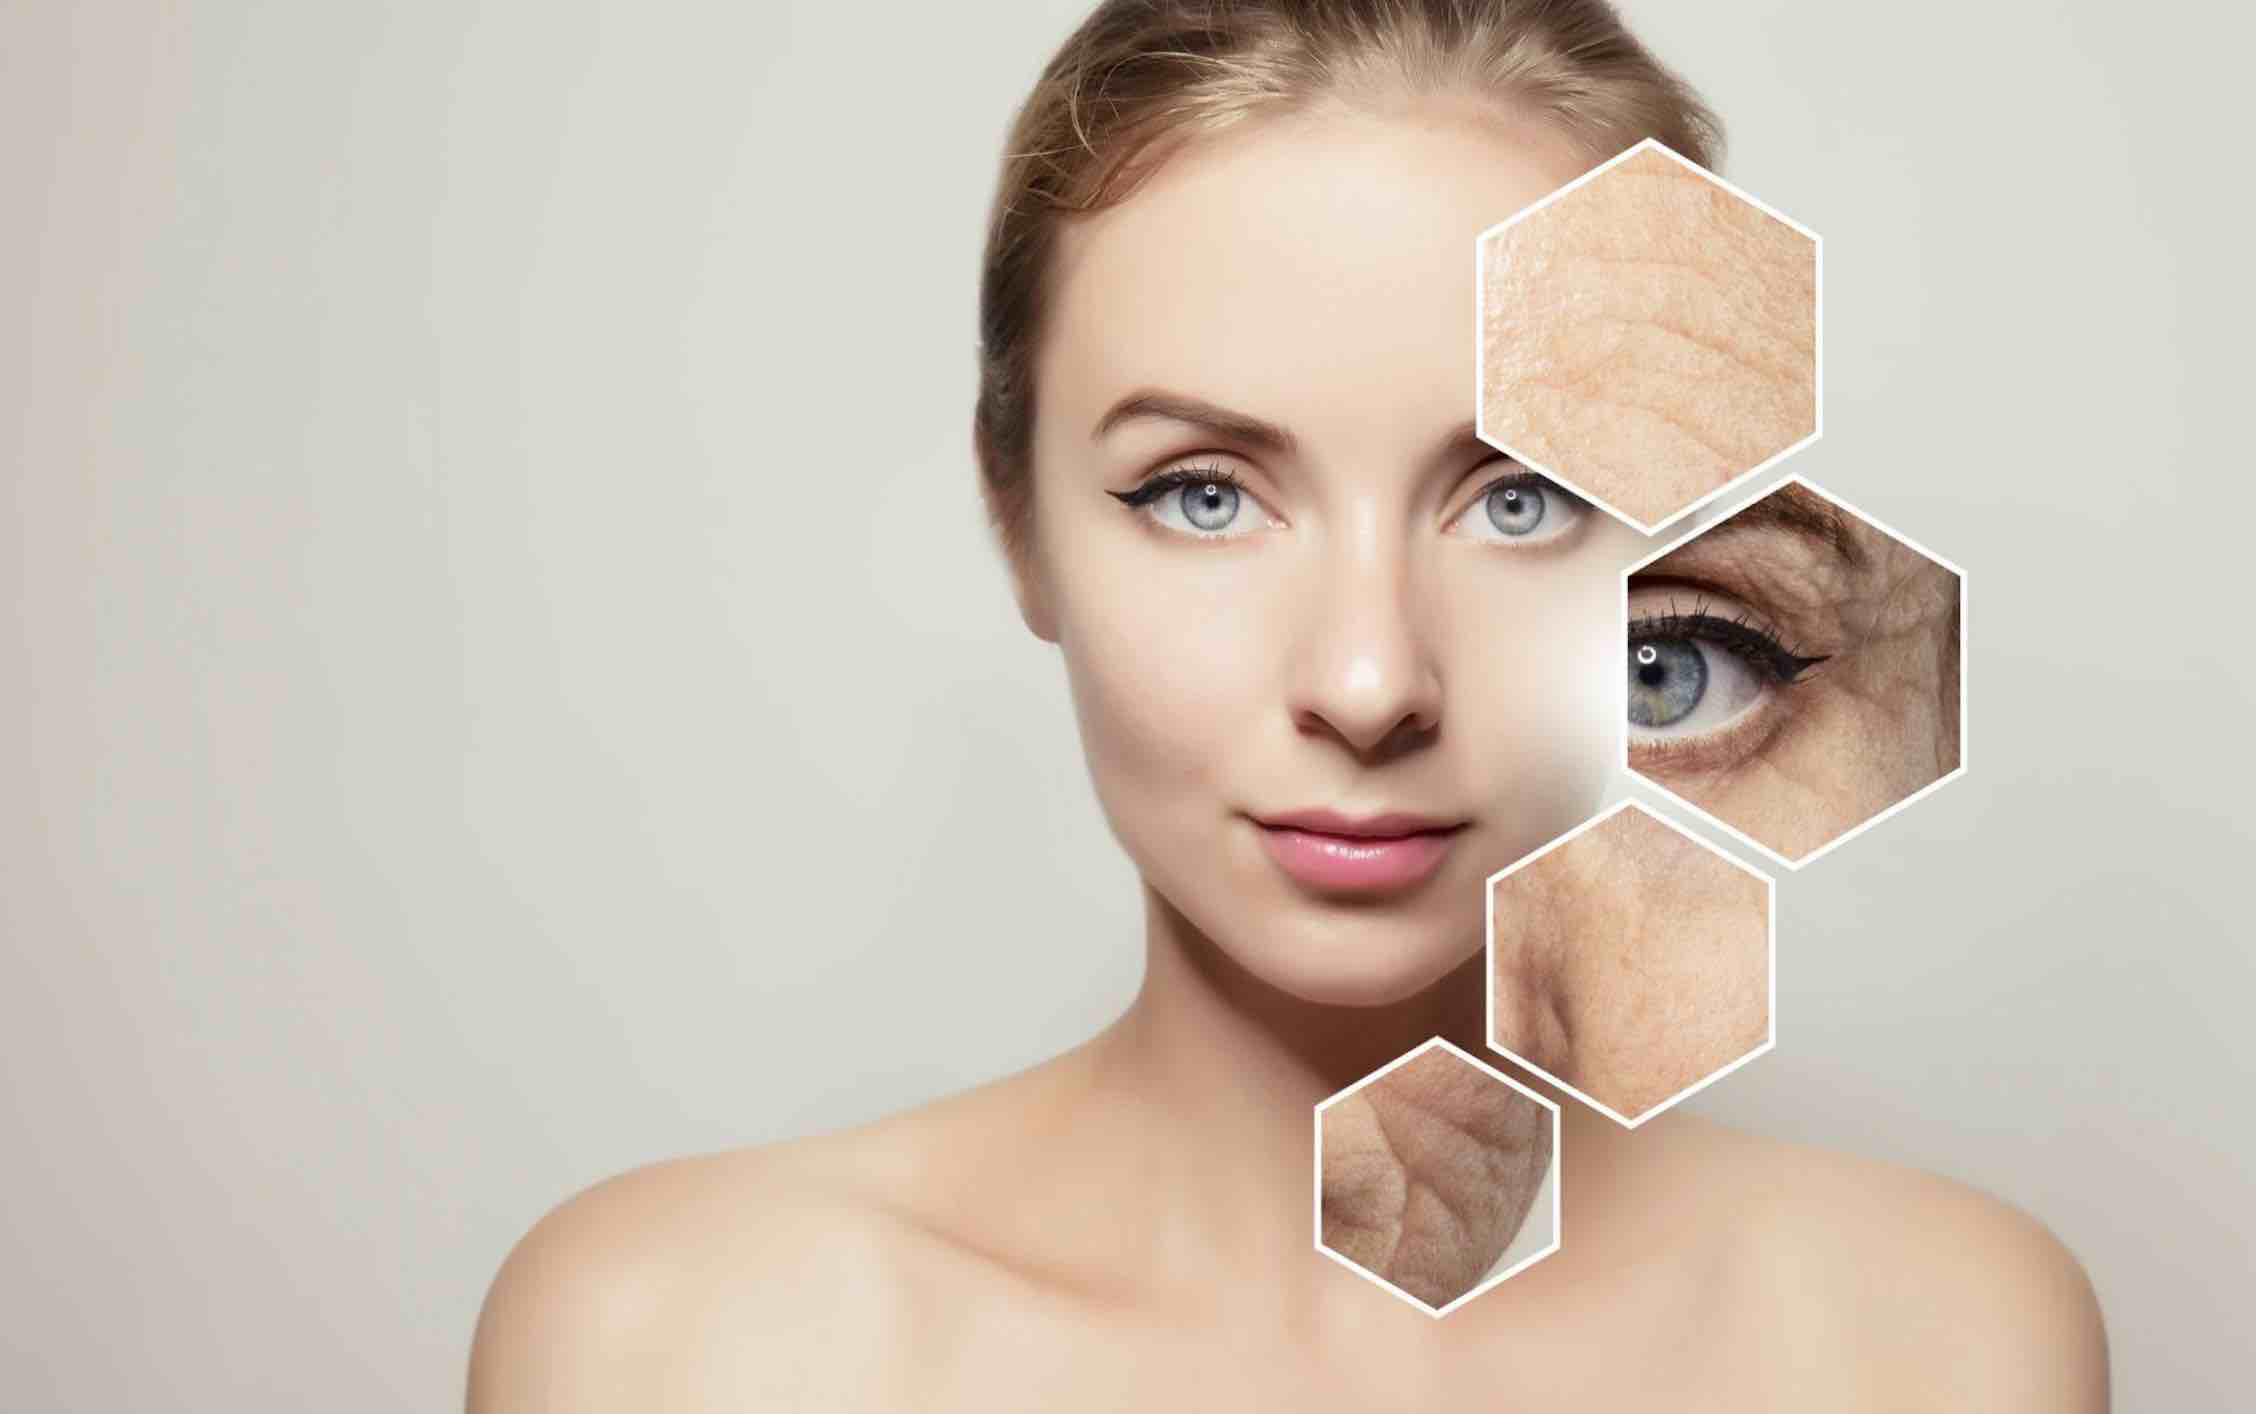 Căng da mặt nội soi là một phương pháp phẫu thuật thẩm mỹ được thực hiện để loại bỏ da chùng và nếp nhăn trên mặt.